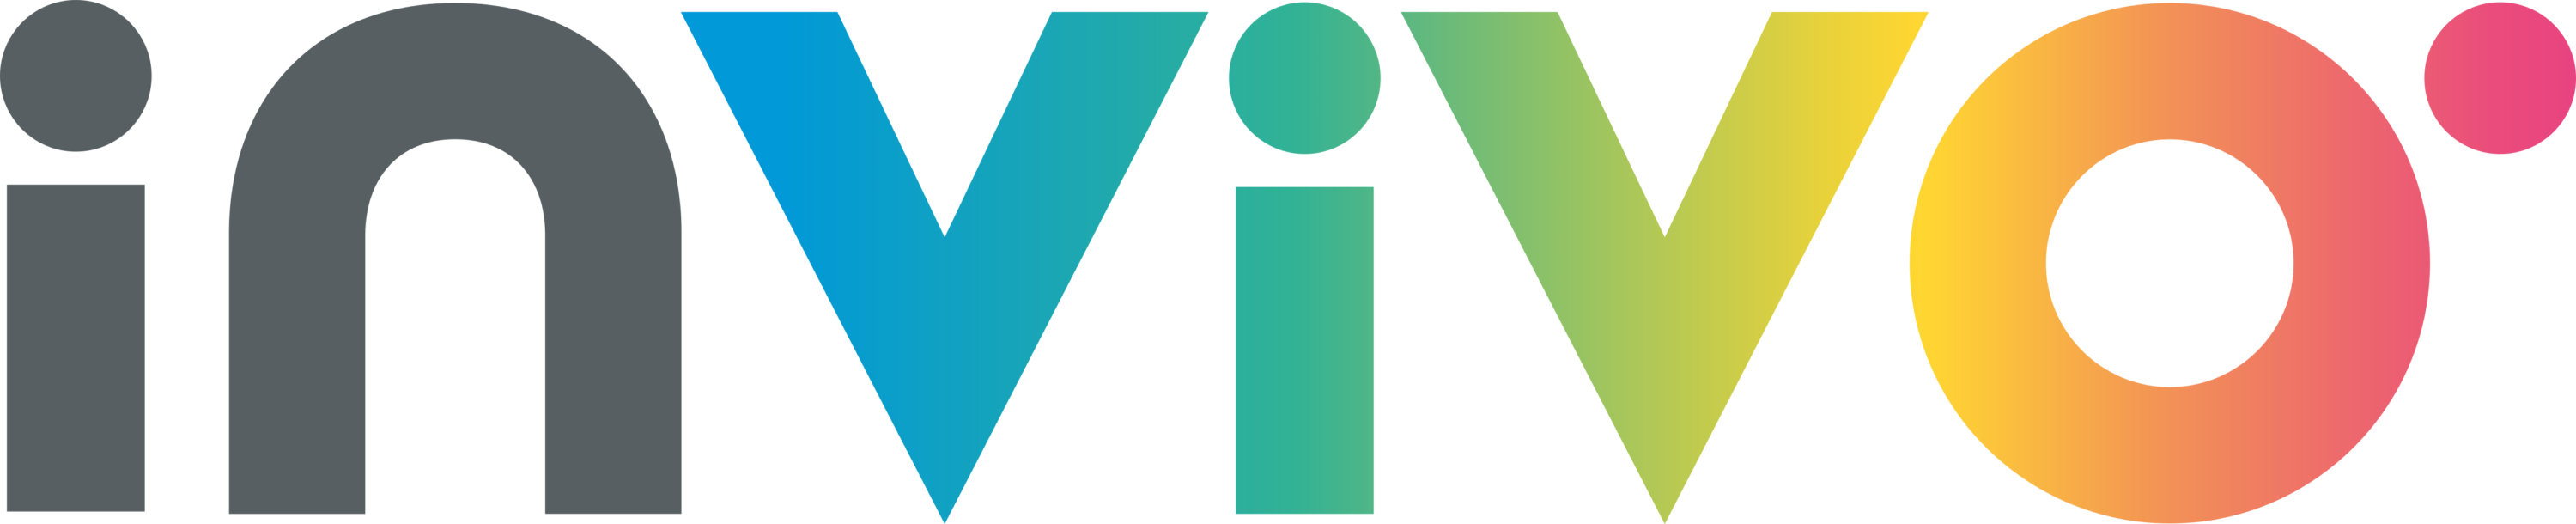 Invivo Logo